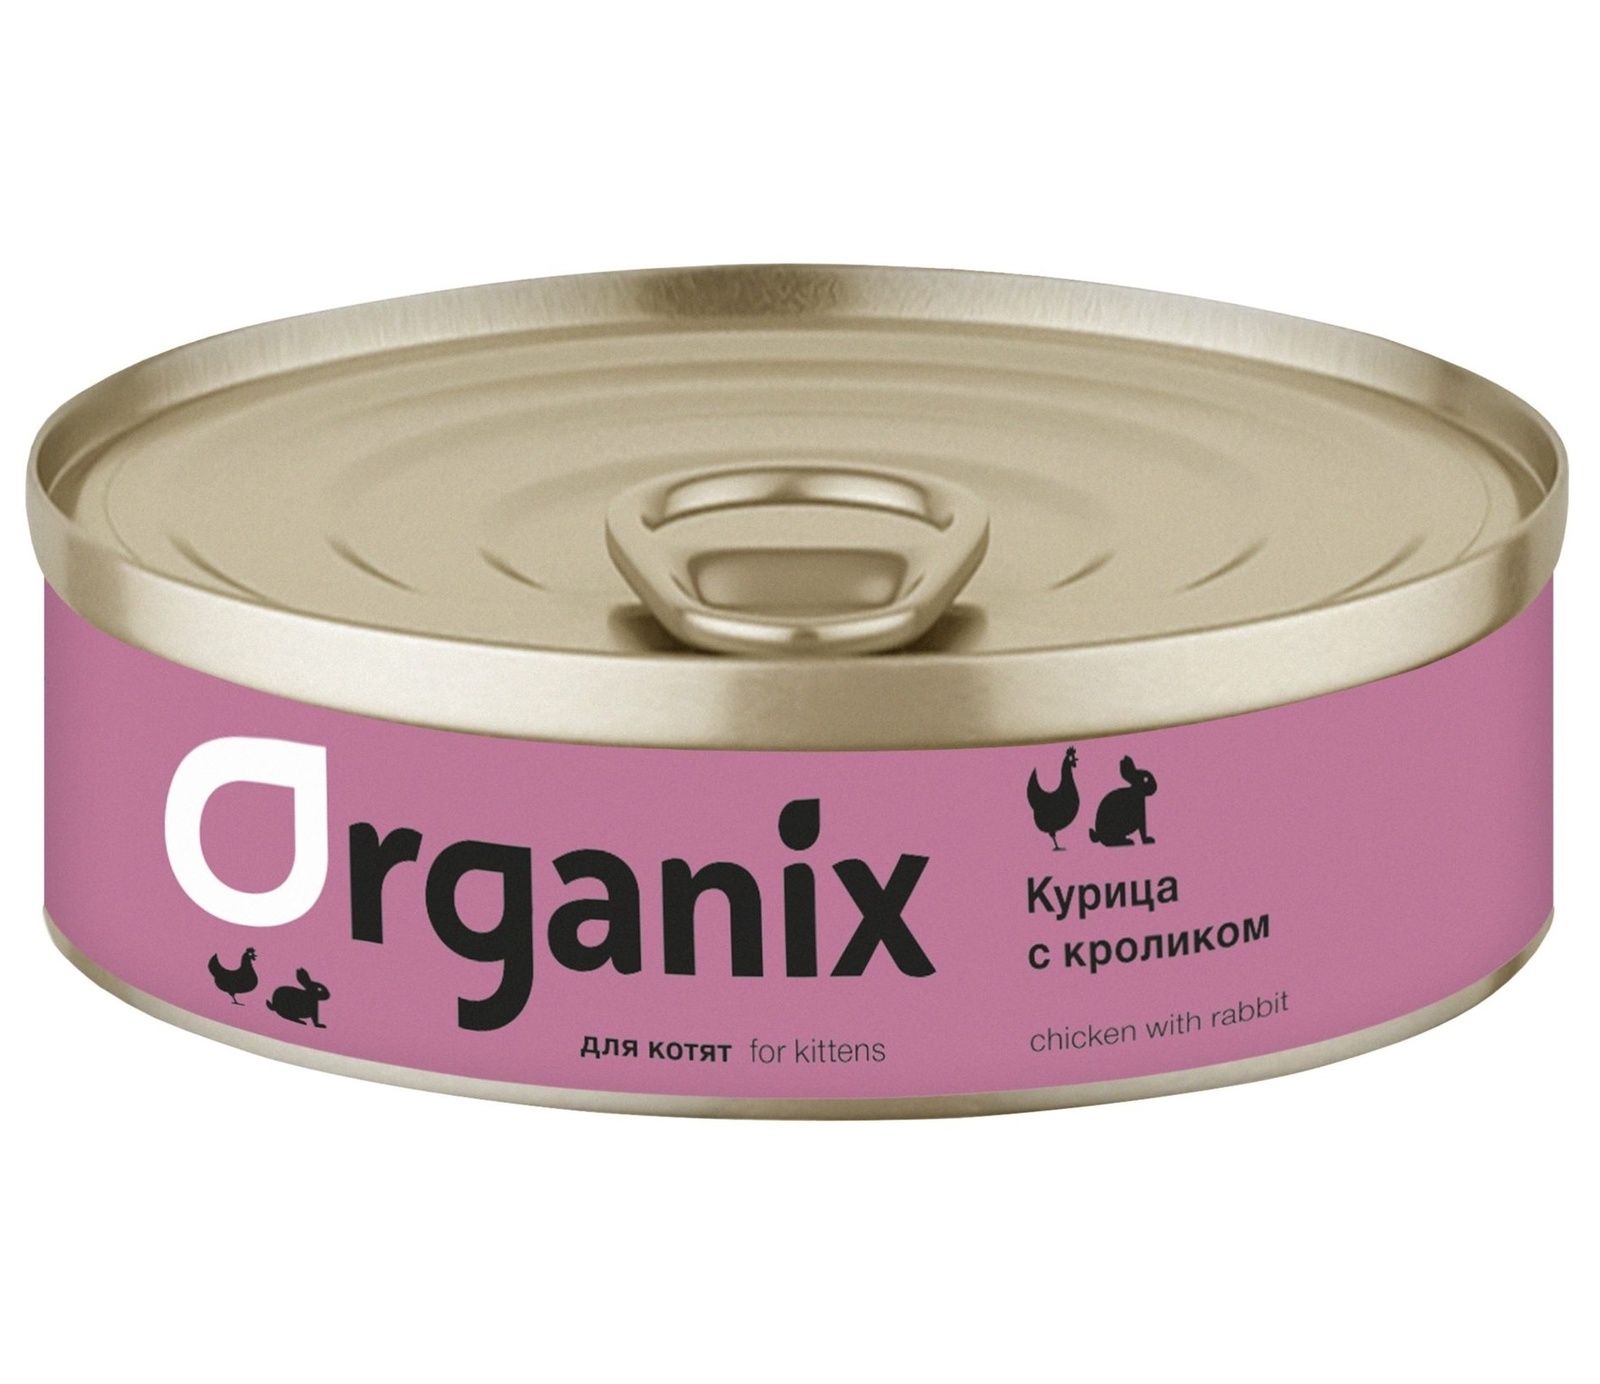 Organix консервы с курочкой и кроликом для котят (100 г)